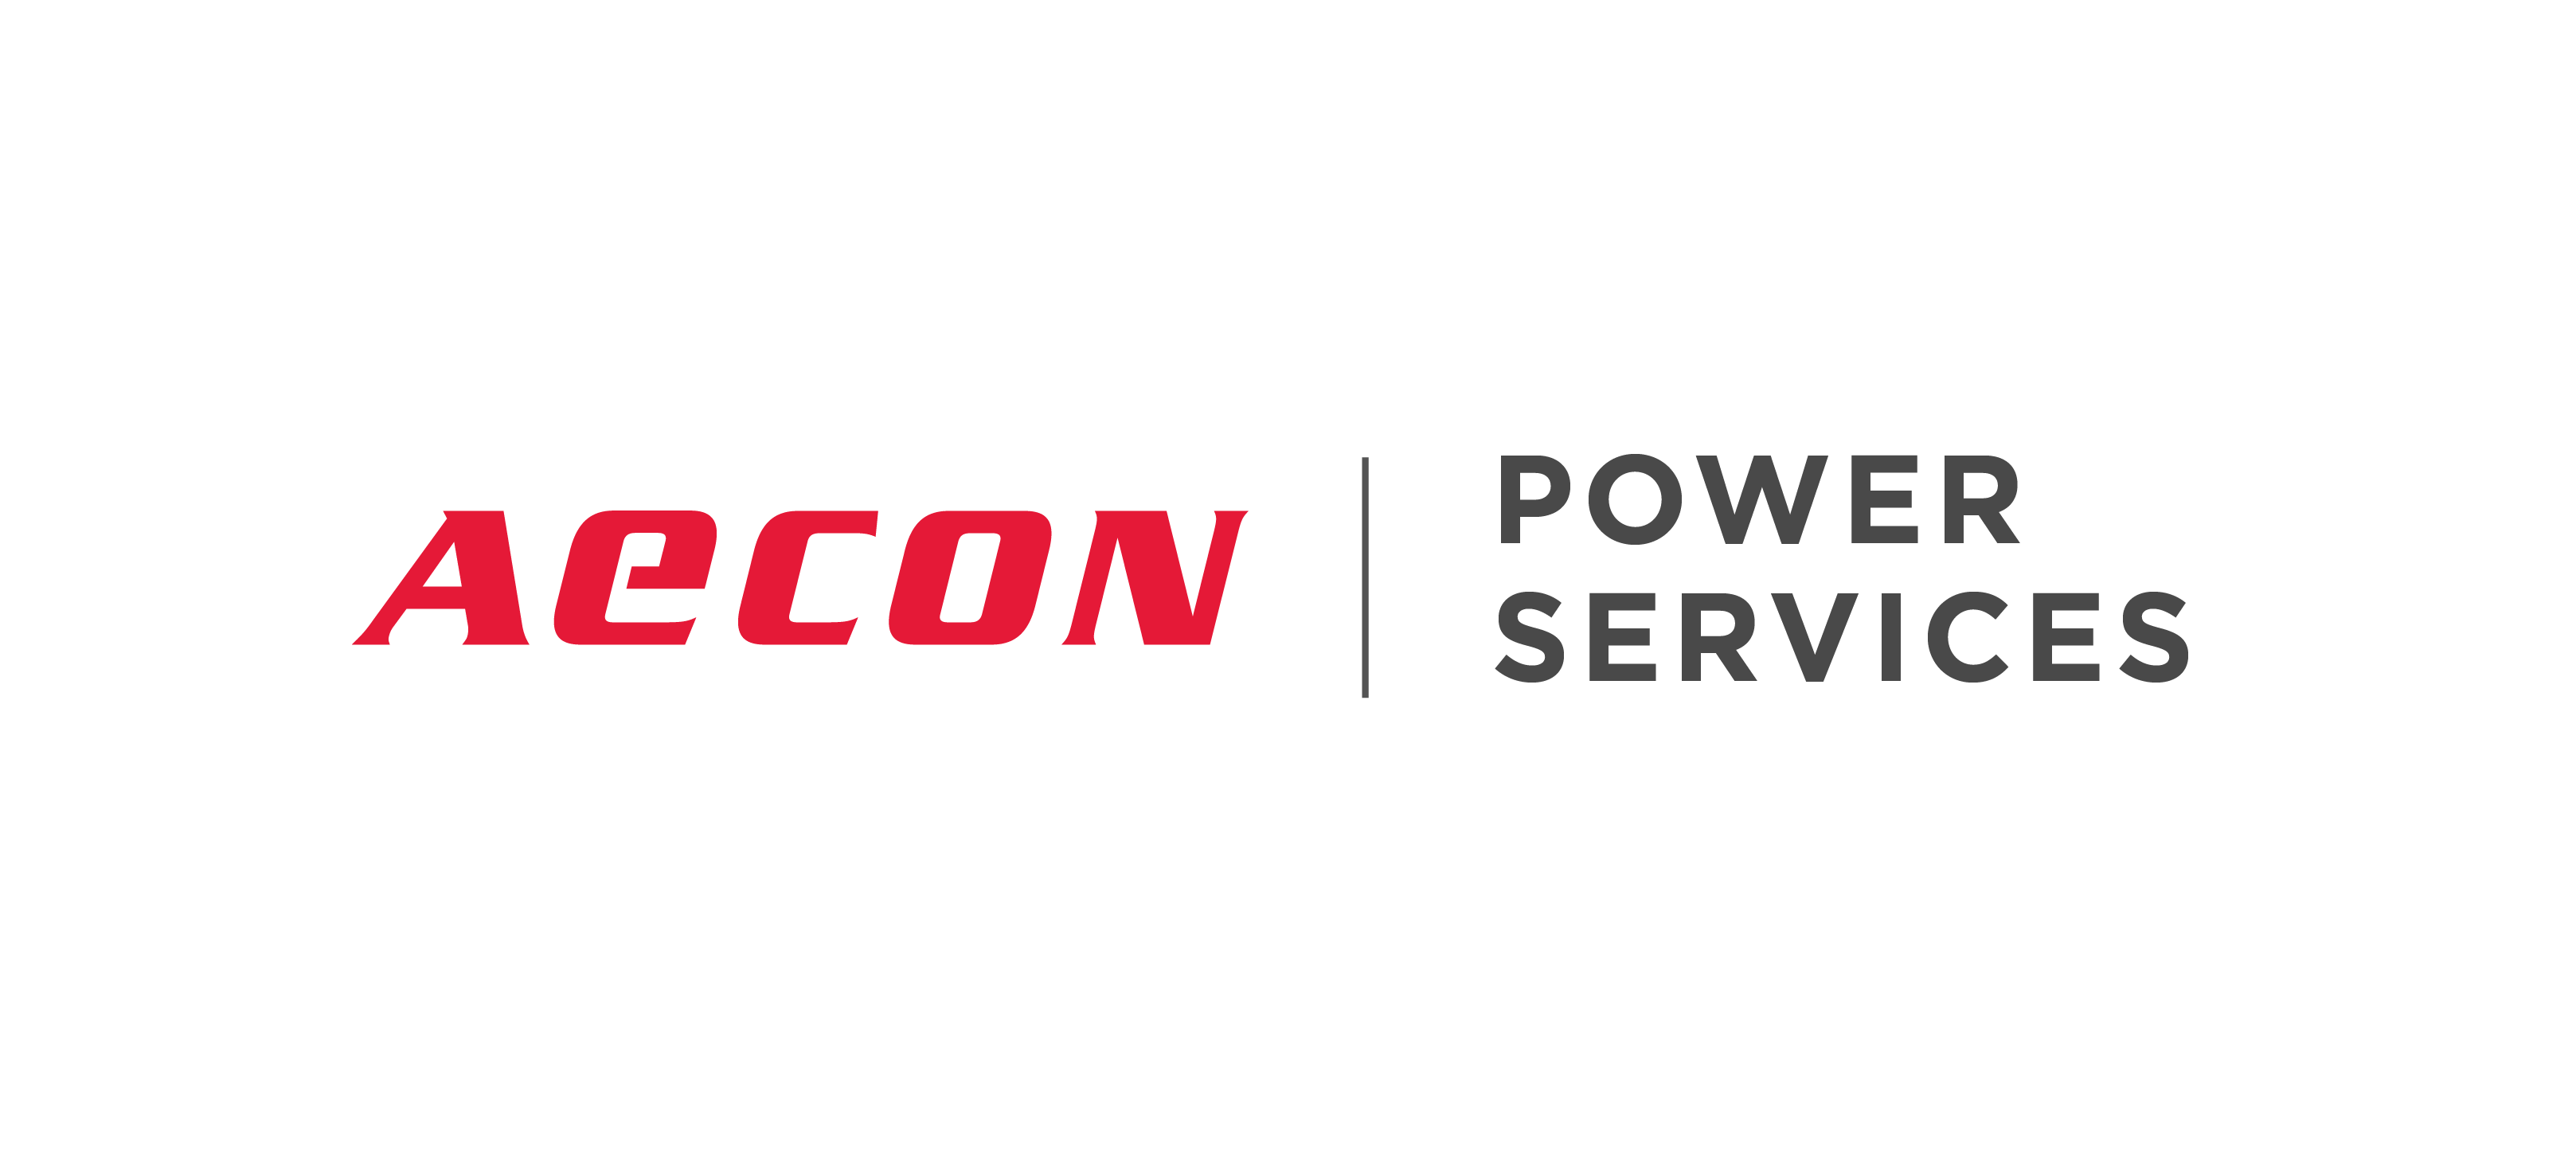 Aecon Power Services logo